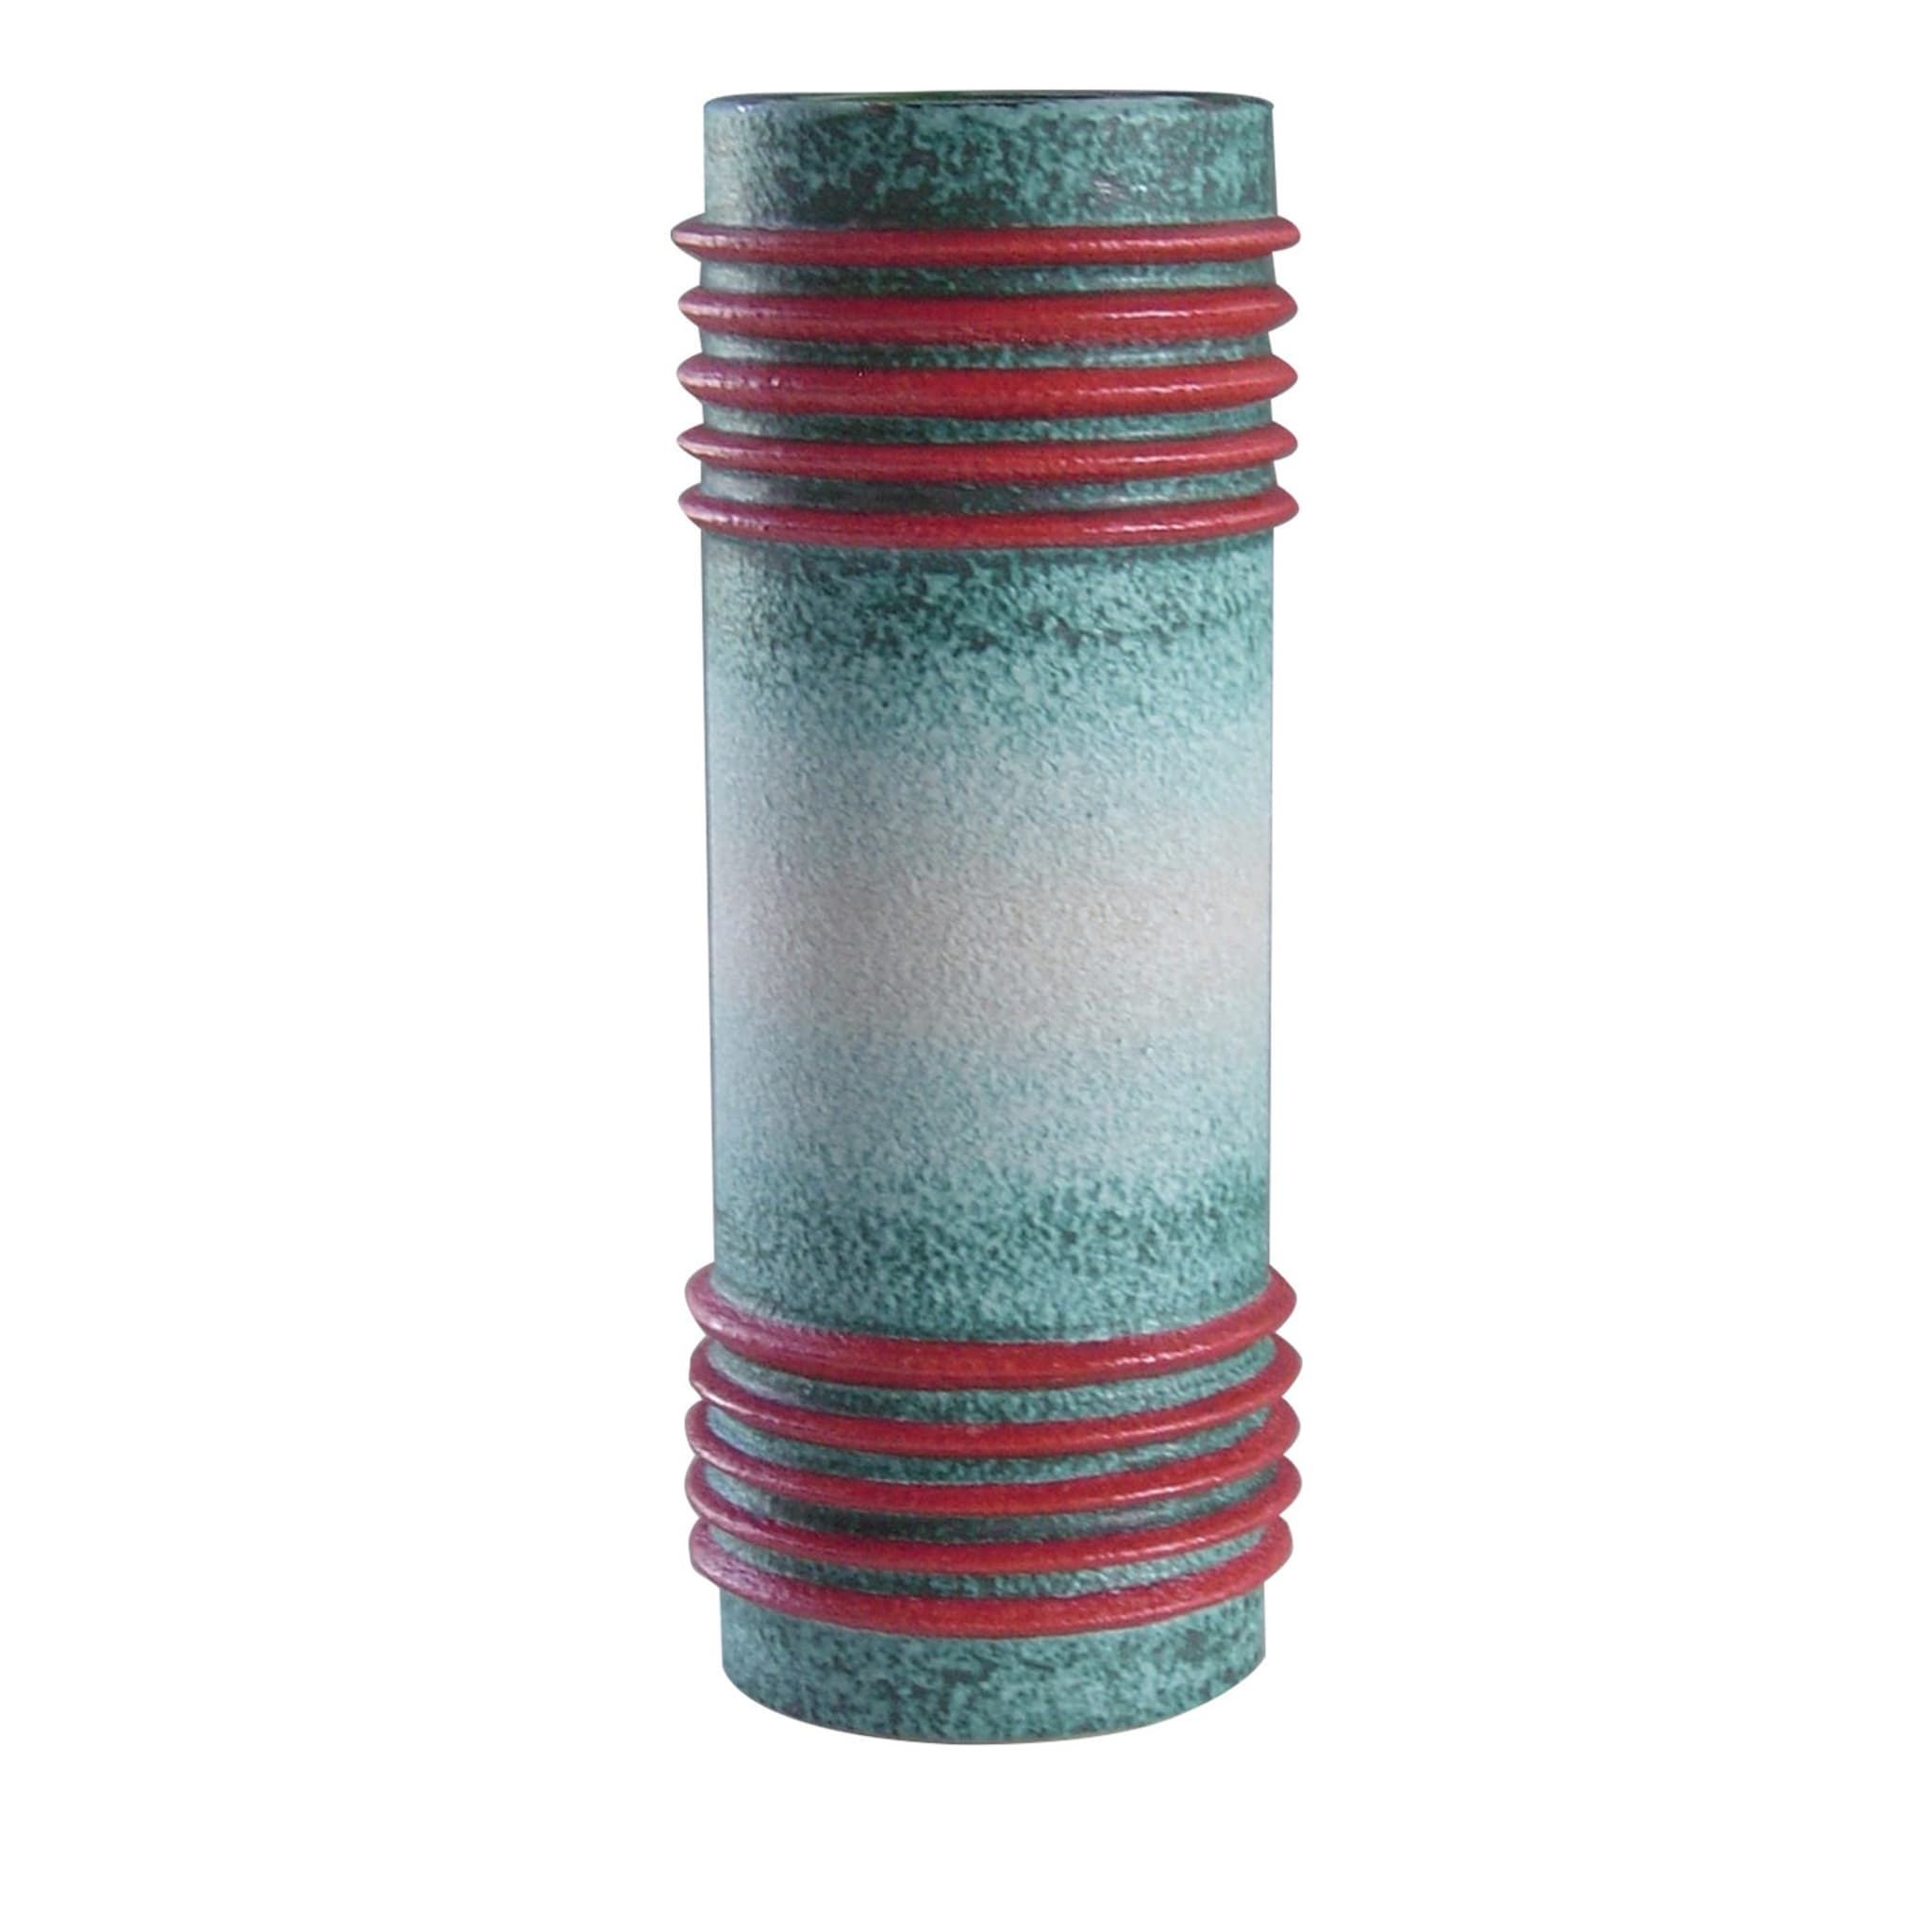 Motorato Assoluto Ceramic Vase - Main view